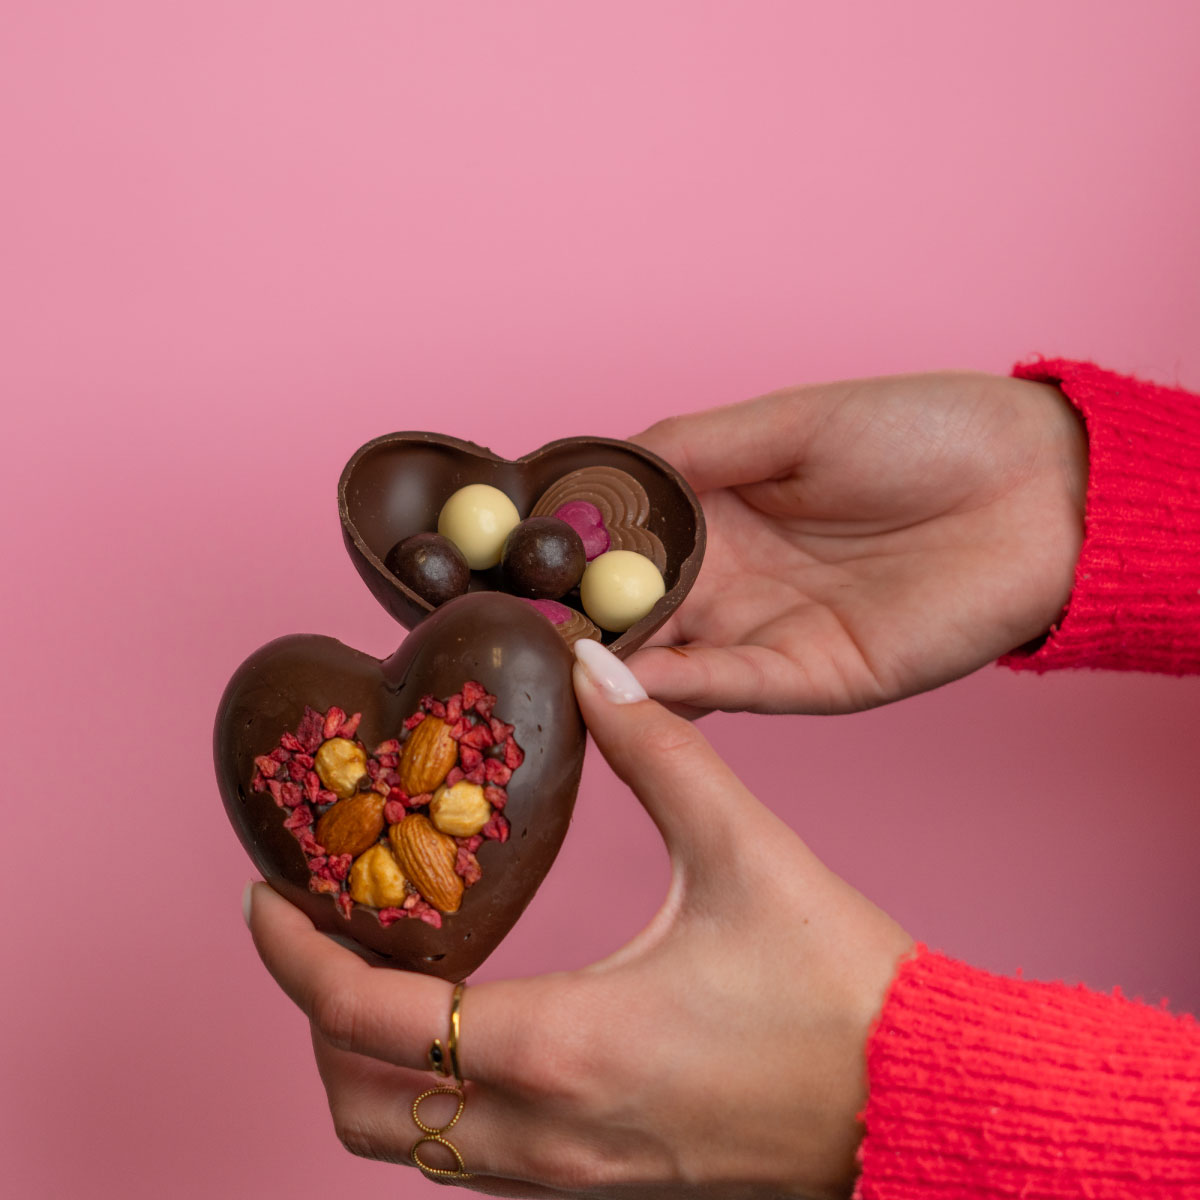 10 gourmandises (et chocolats) à offrir à la Saint-Valentin